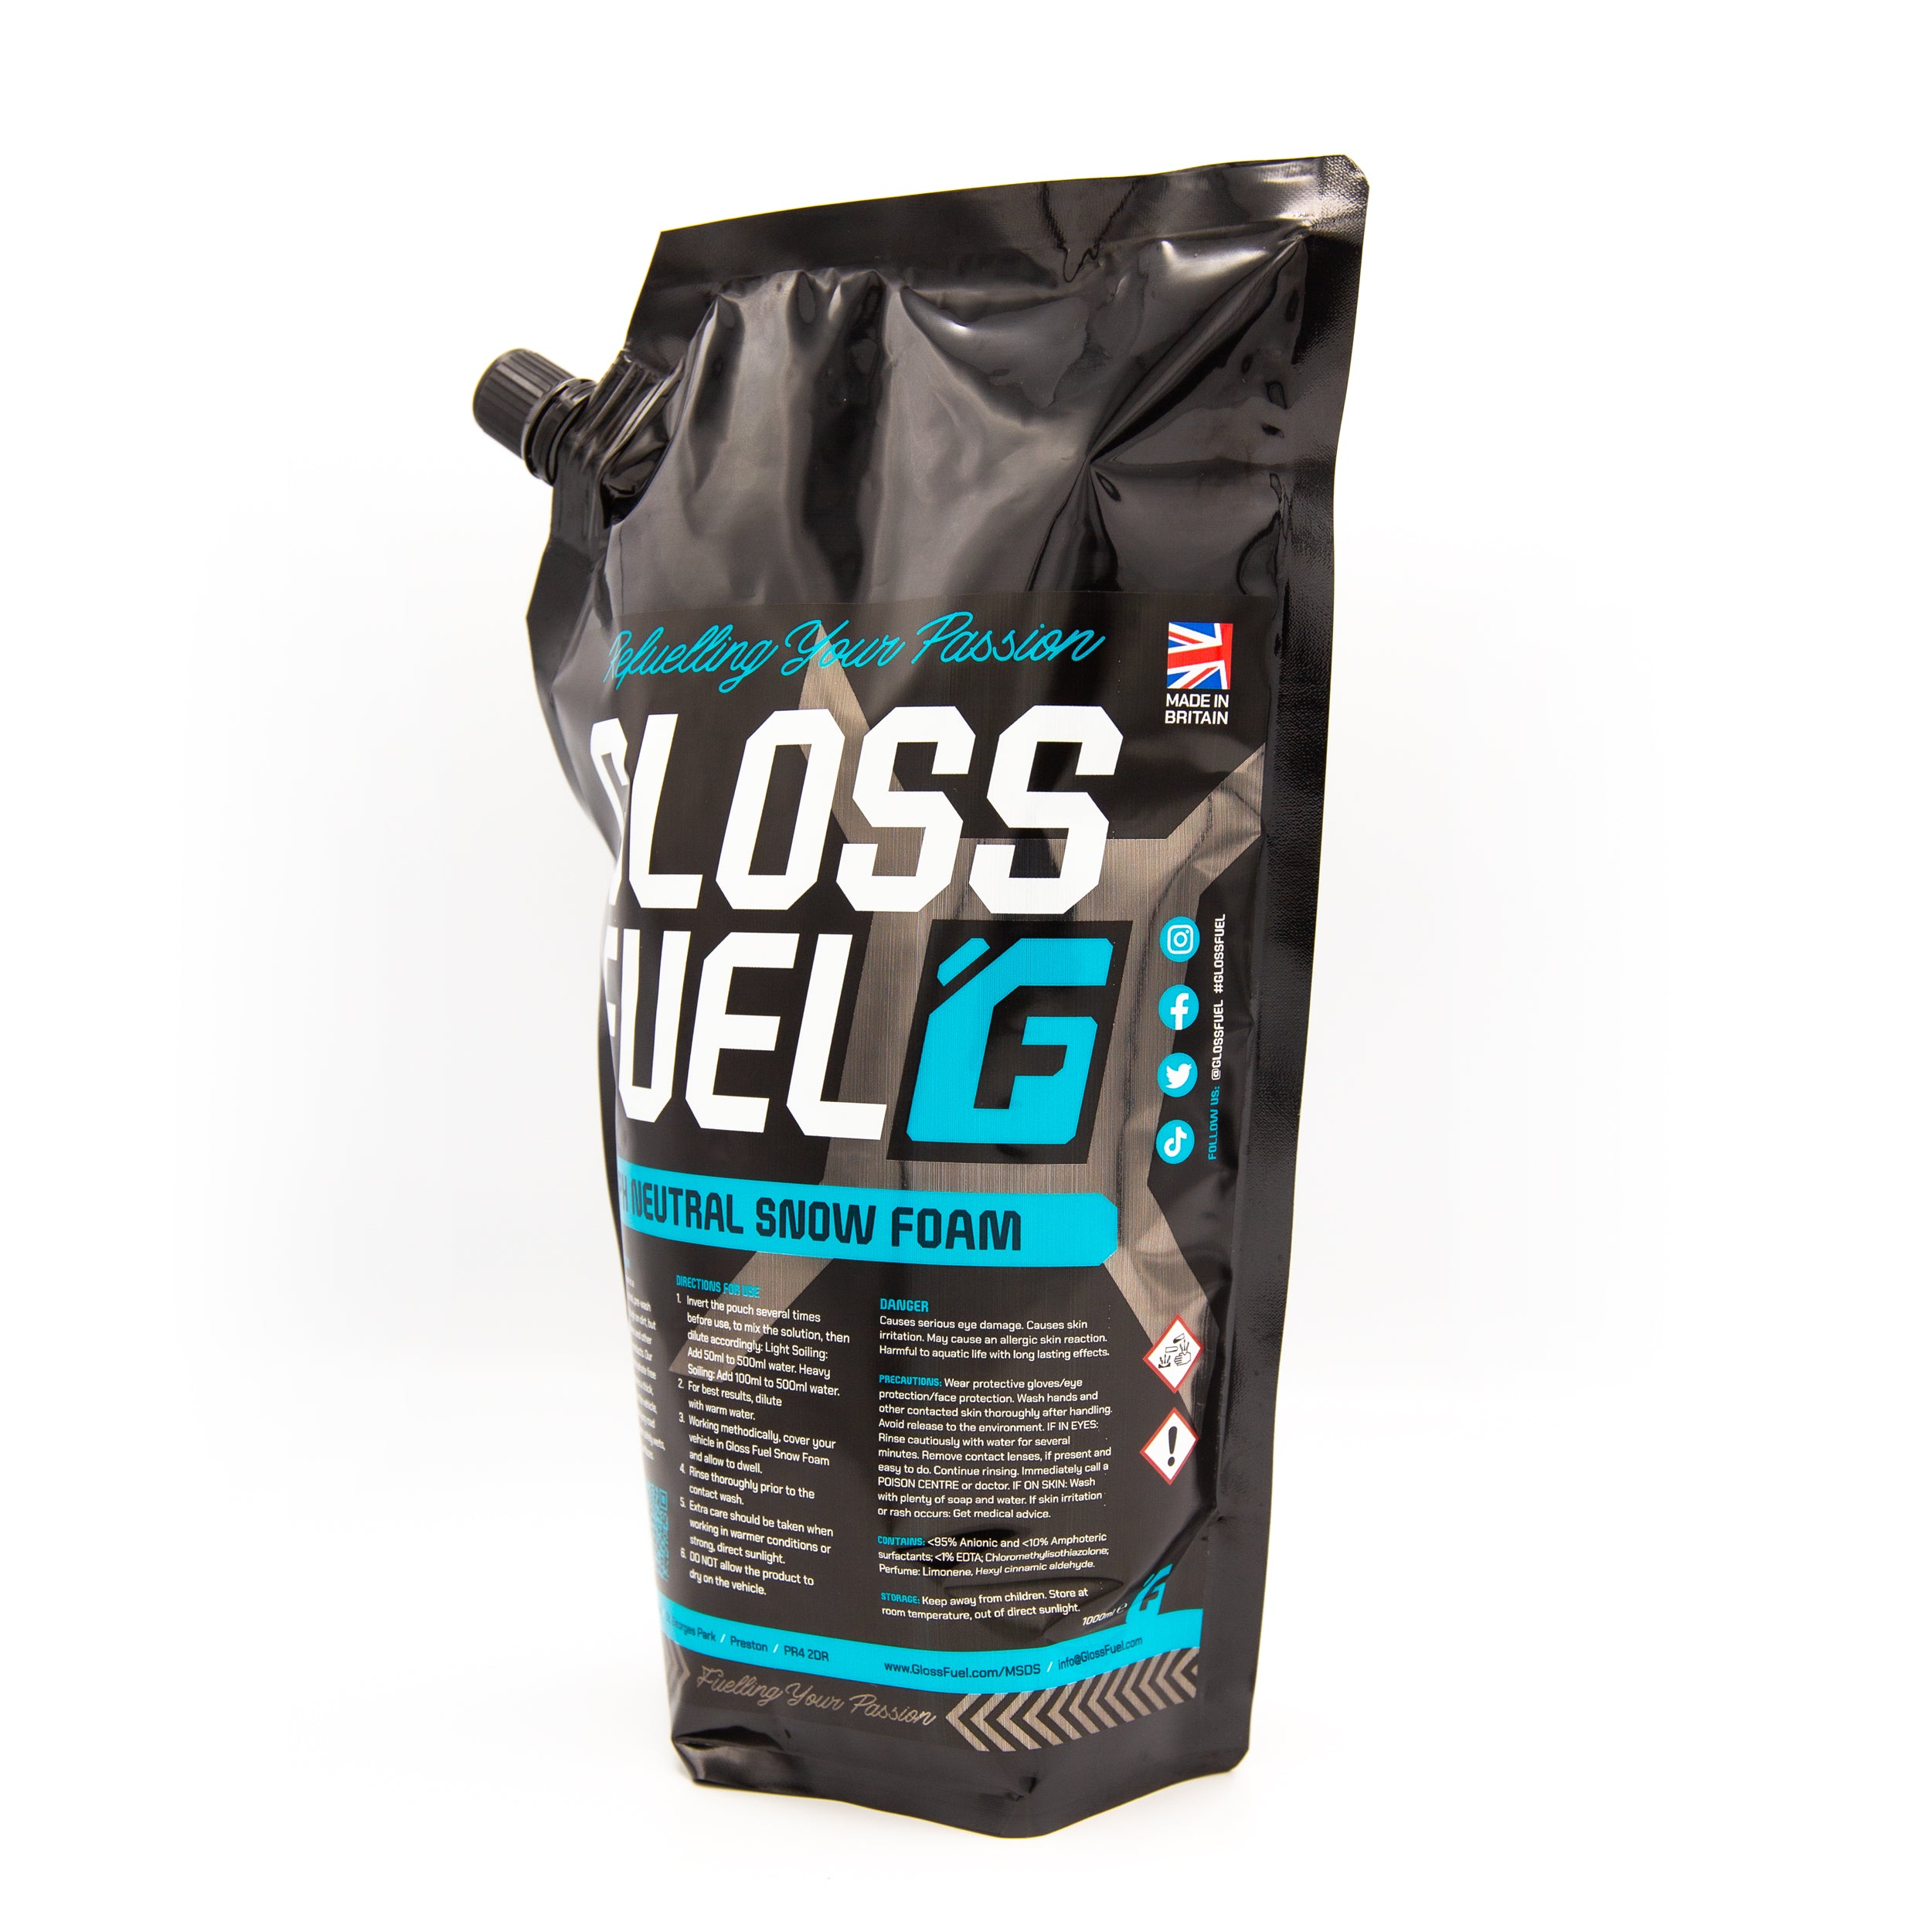 Gloss Fuel pH Neutral Snow Foam - 1 Litre Refuel Pack